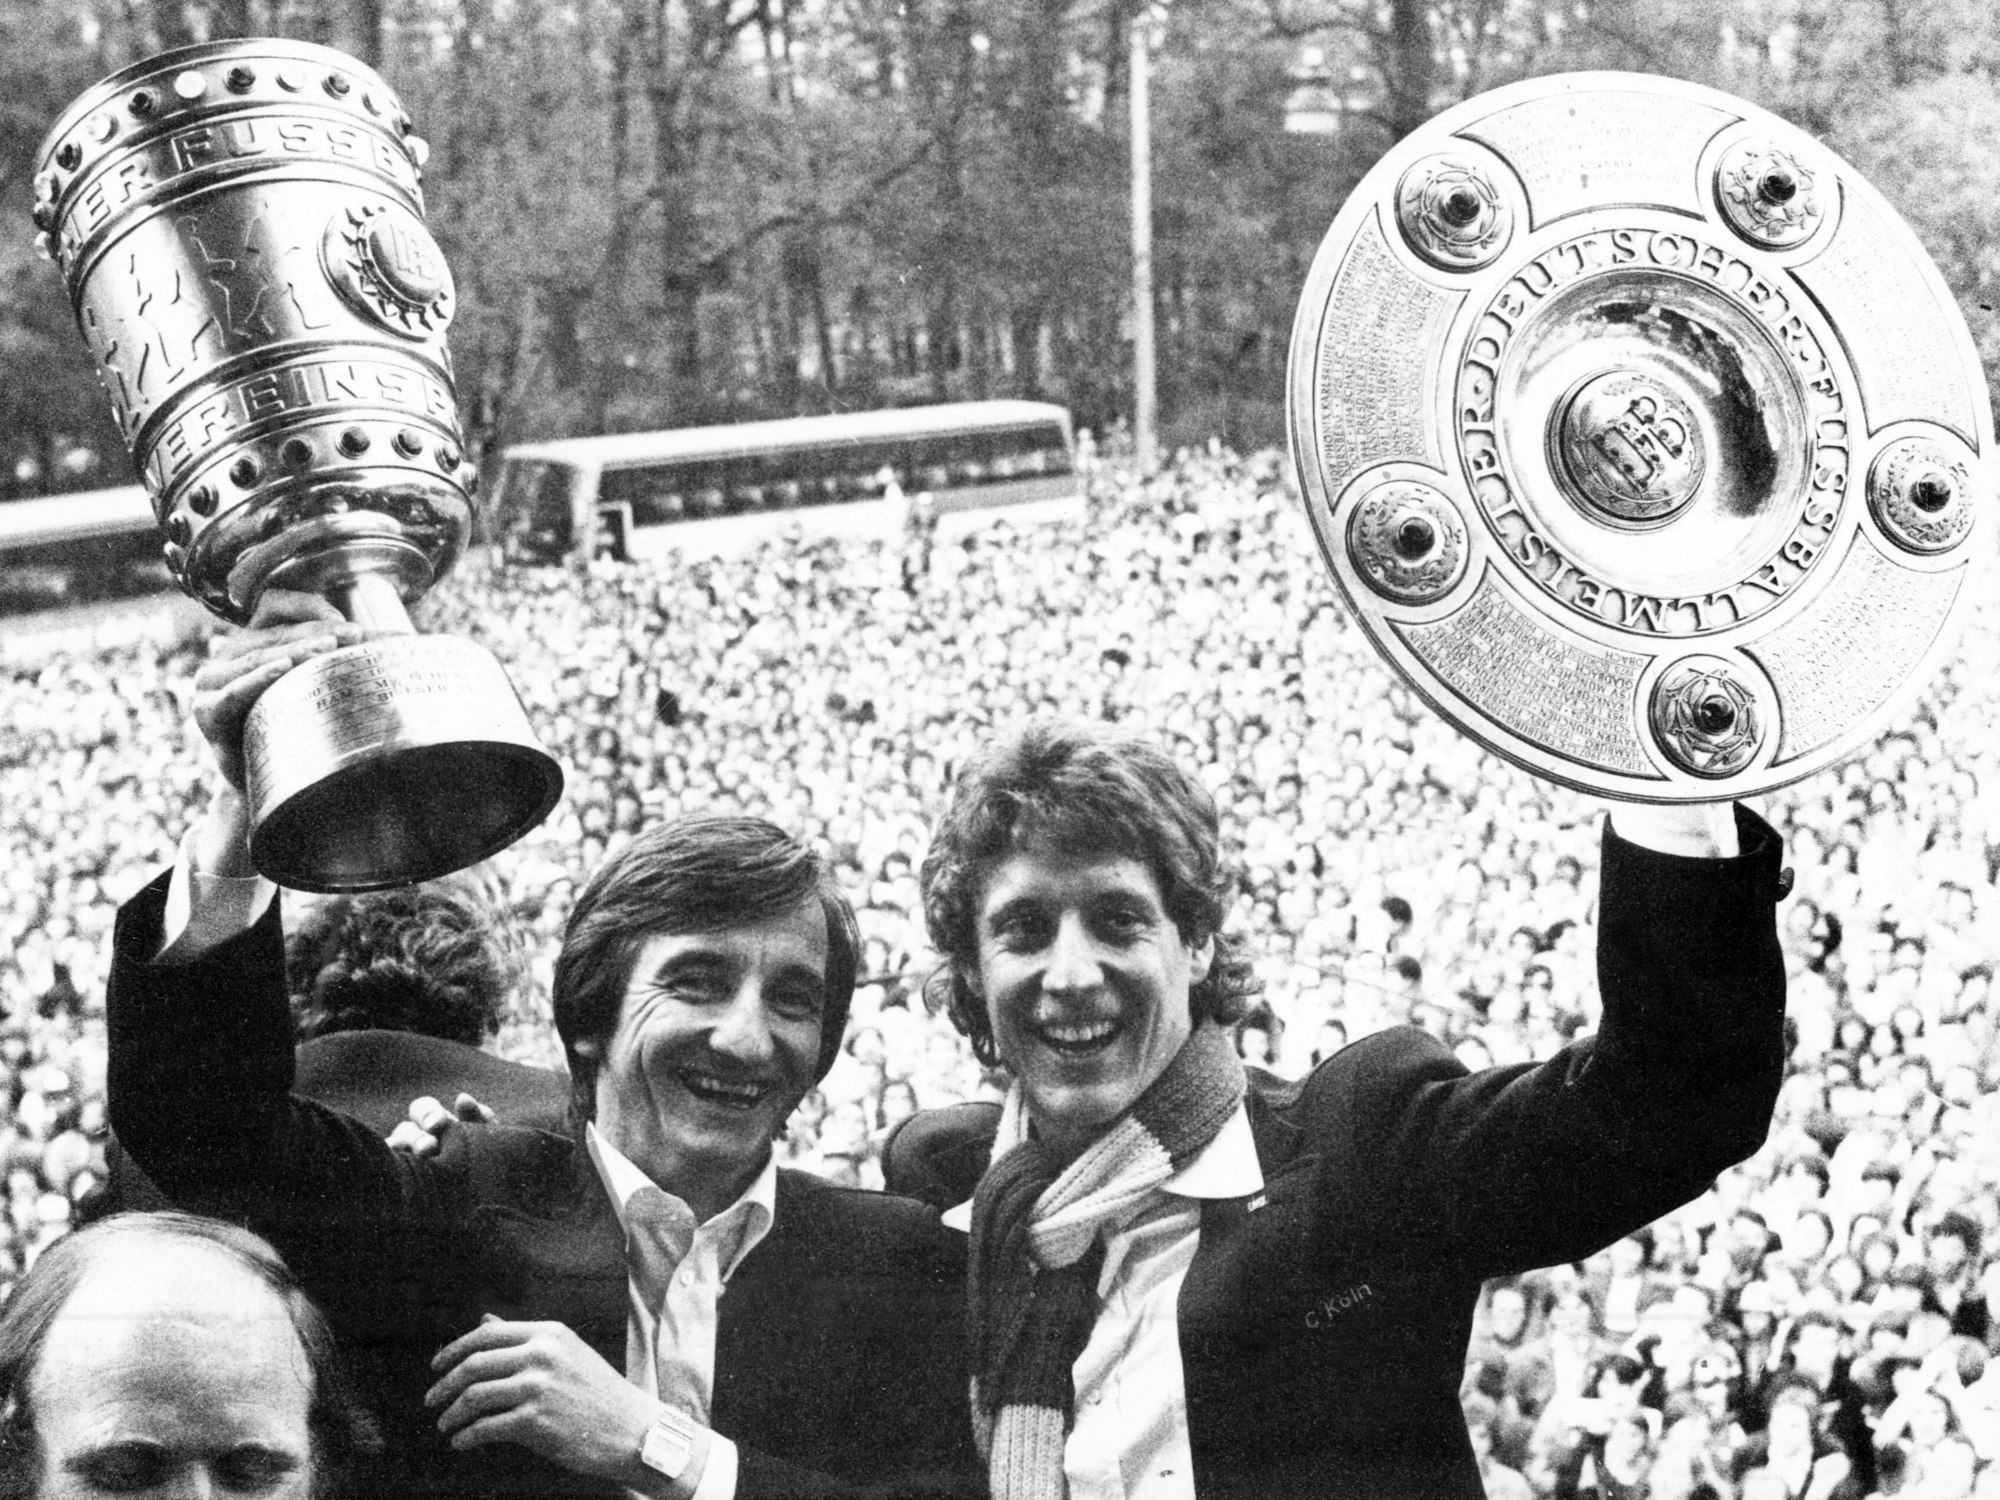 Toni Schumacher hält auf dem Rathausbalkon in Köln die Meisterschale in die Höhe, links von ihm Hannes Lähr den Pokal.